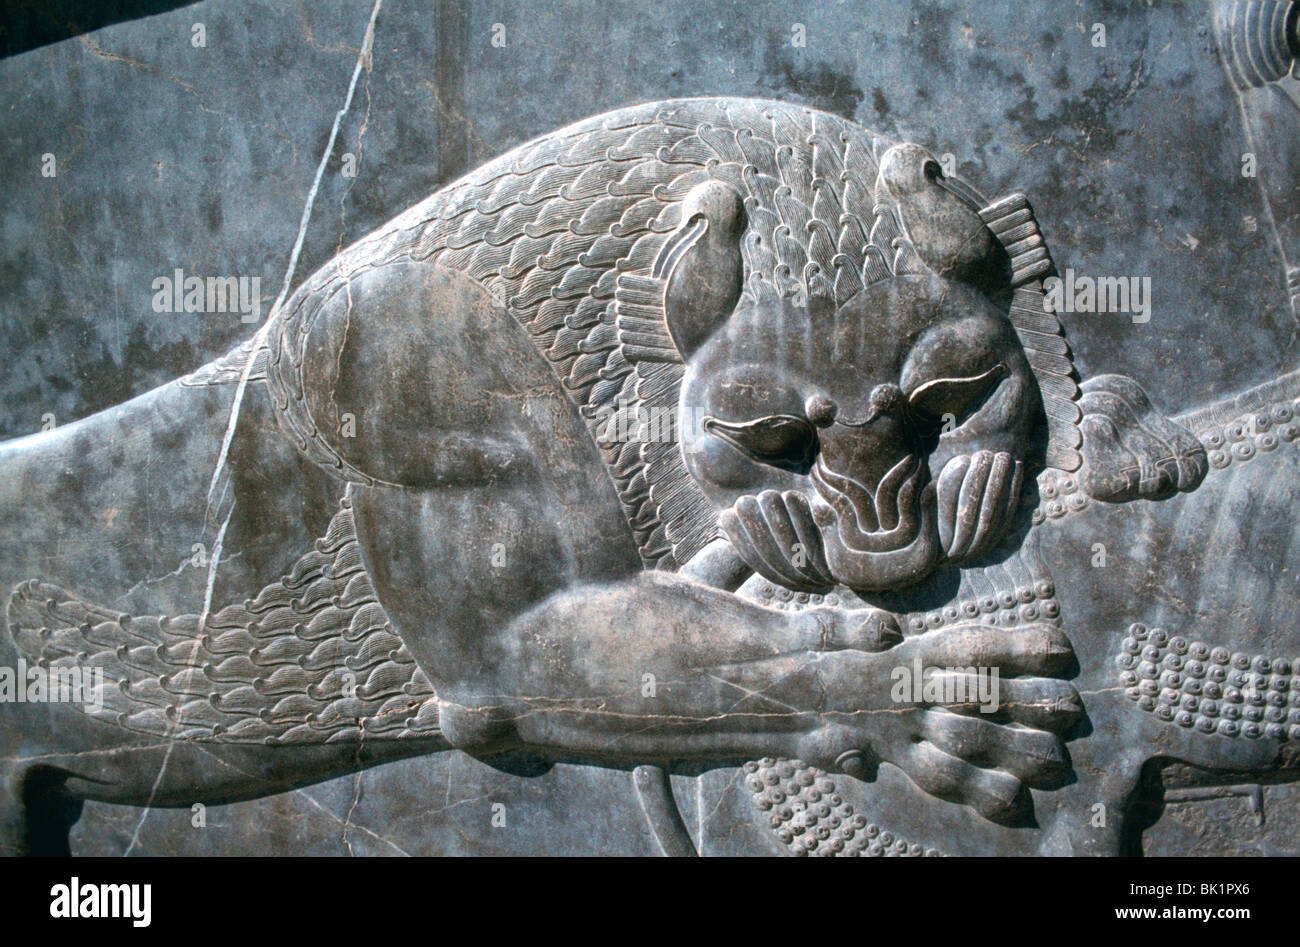 Détail d'un relief d'un lion attaquant un taureau, l'Apadana, Persepolis, Iran Banque D'Images